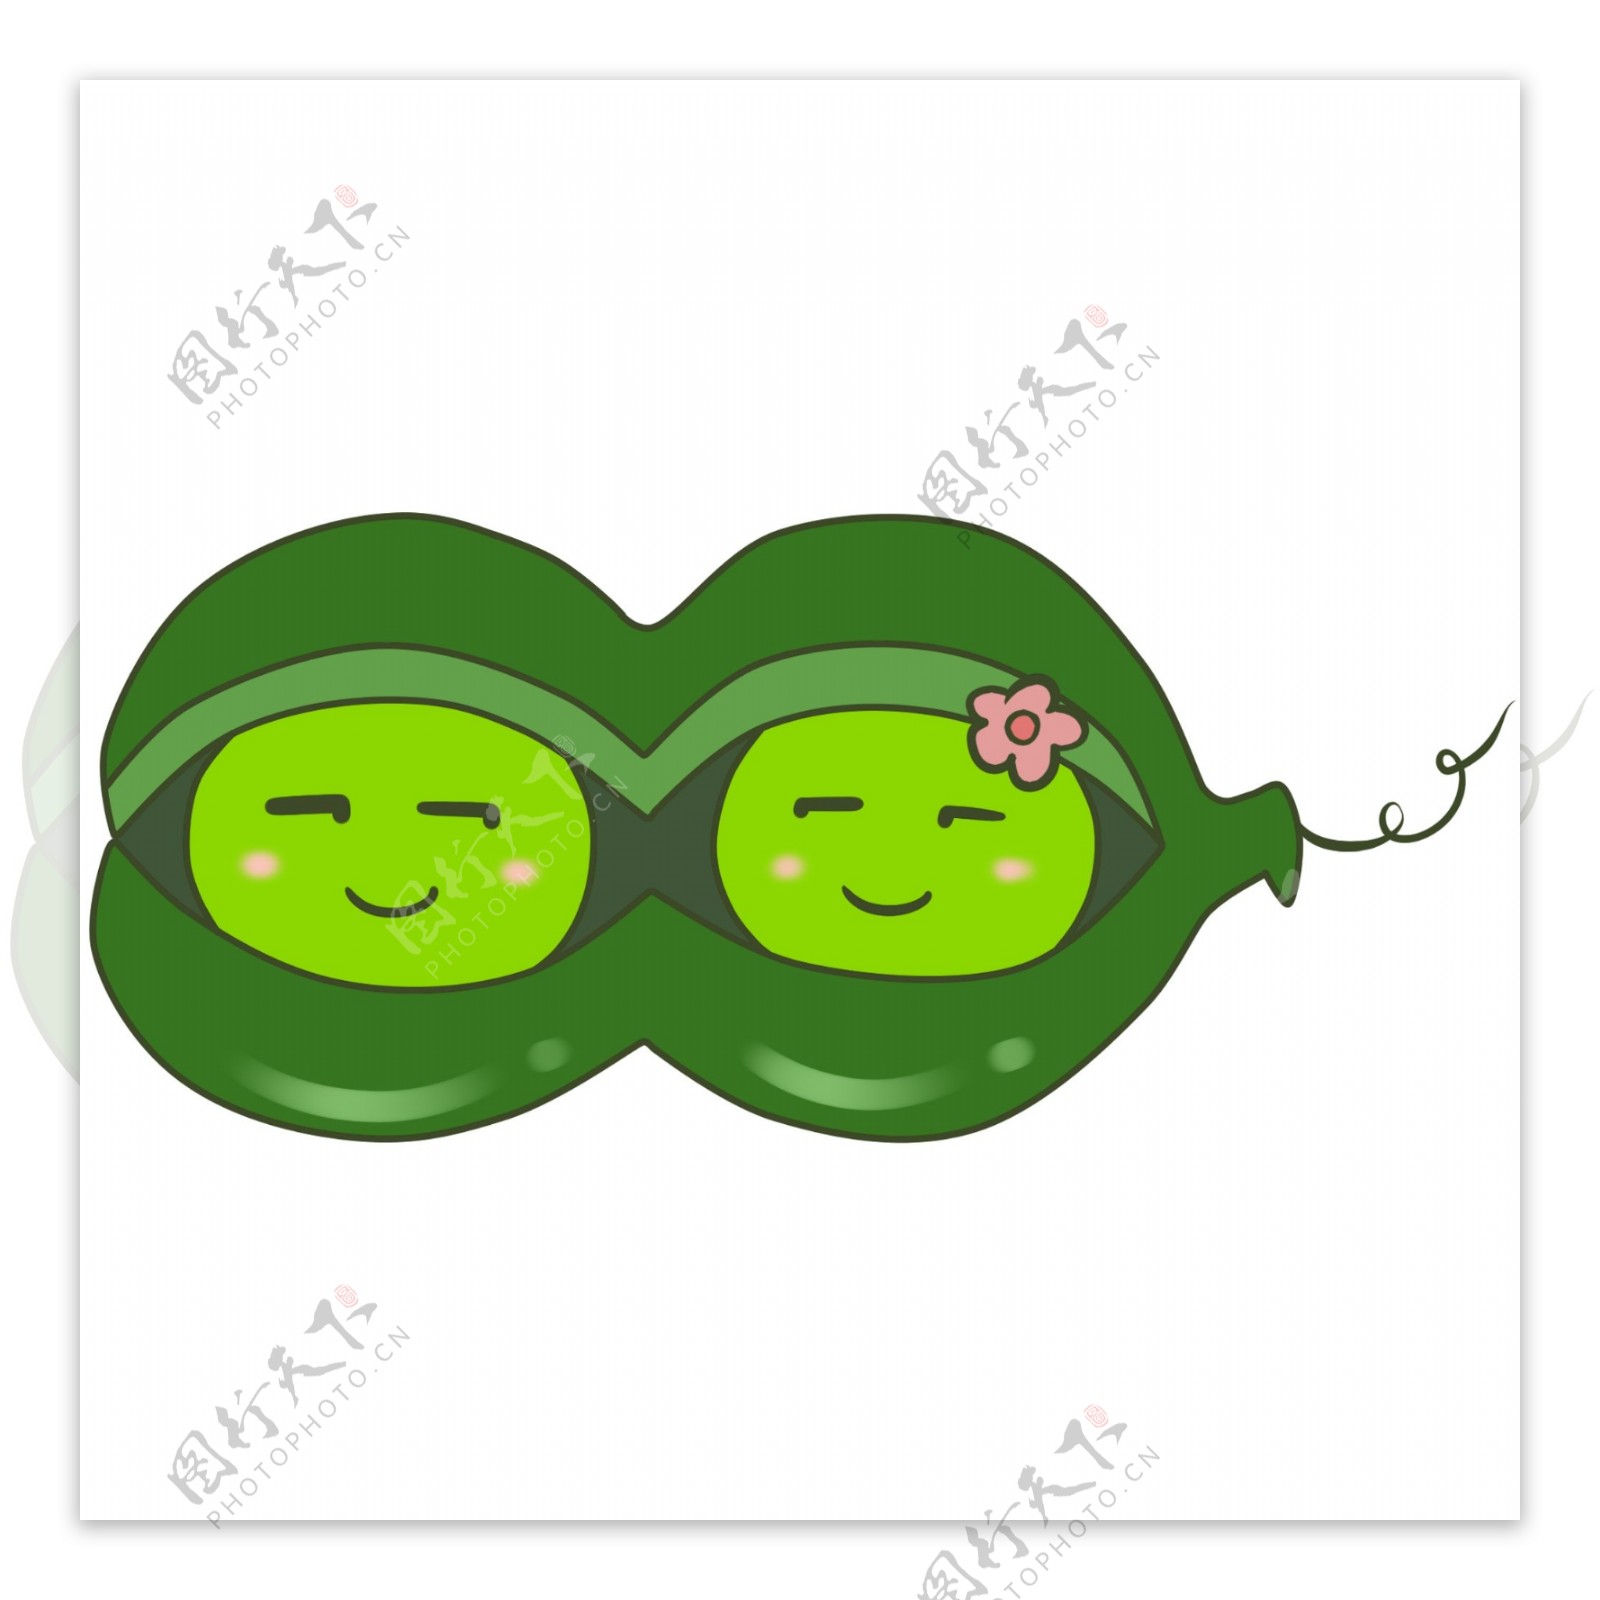 扁平风格的手绘豌豆两个小可爱